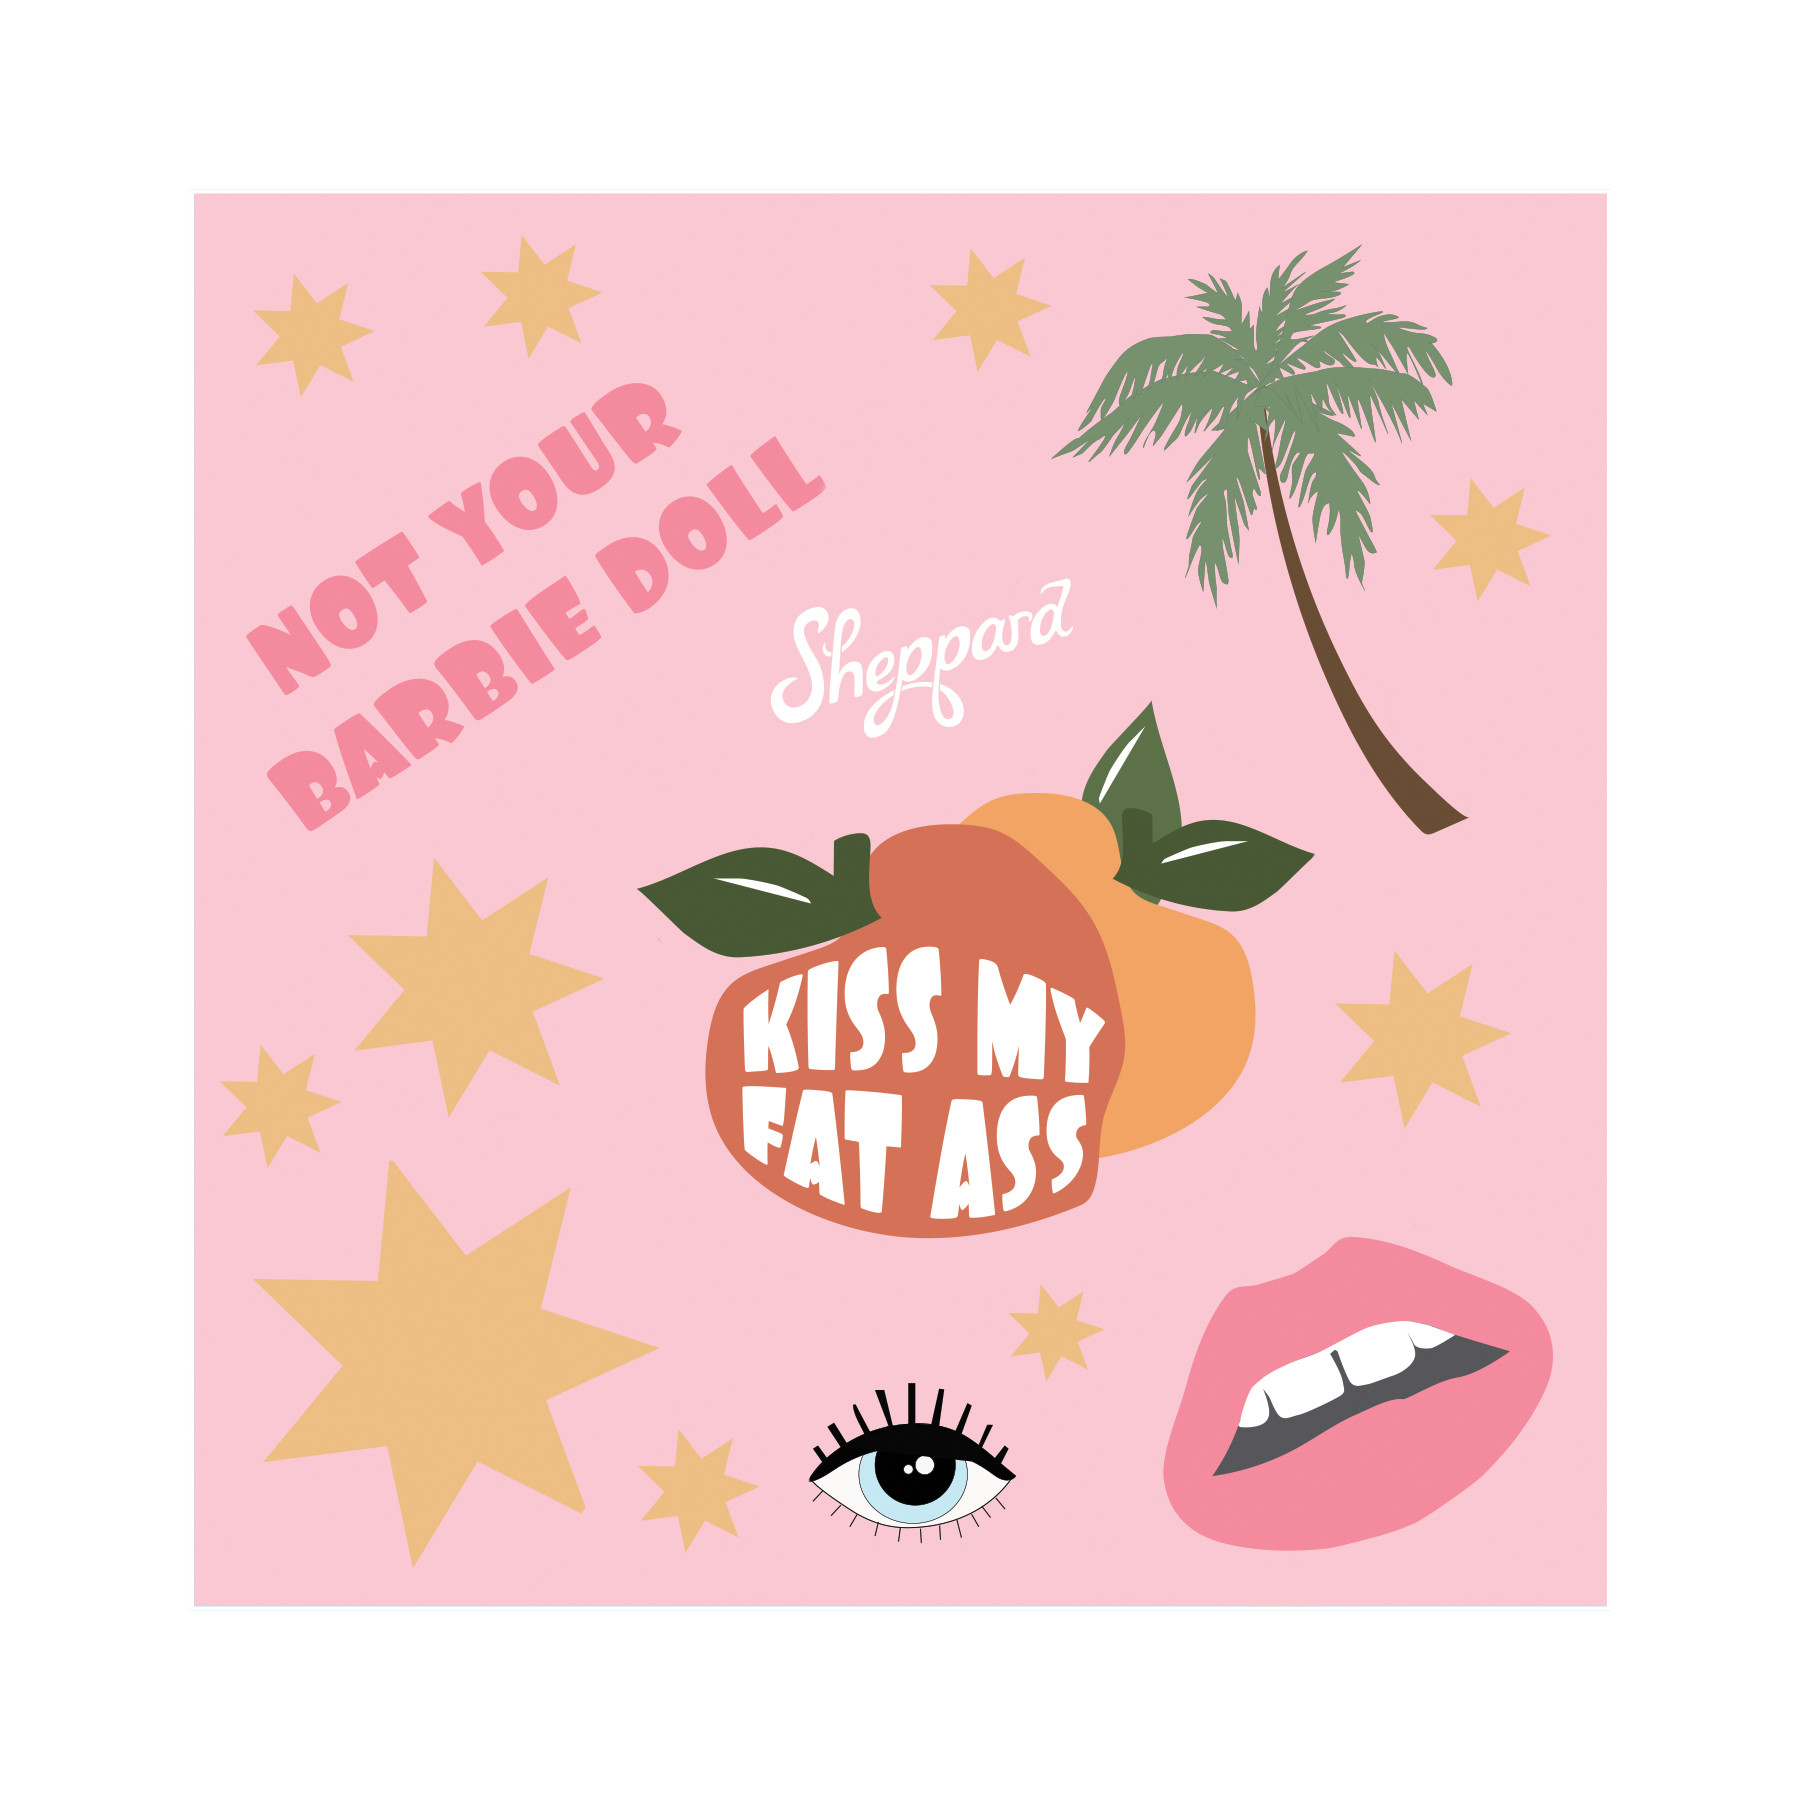 Sheppard - Kiss My Fat Ass Sticker Sheet